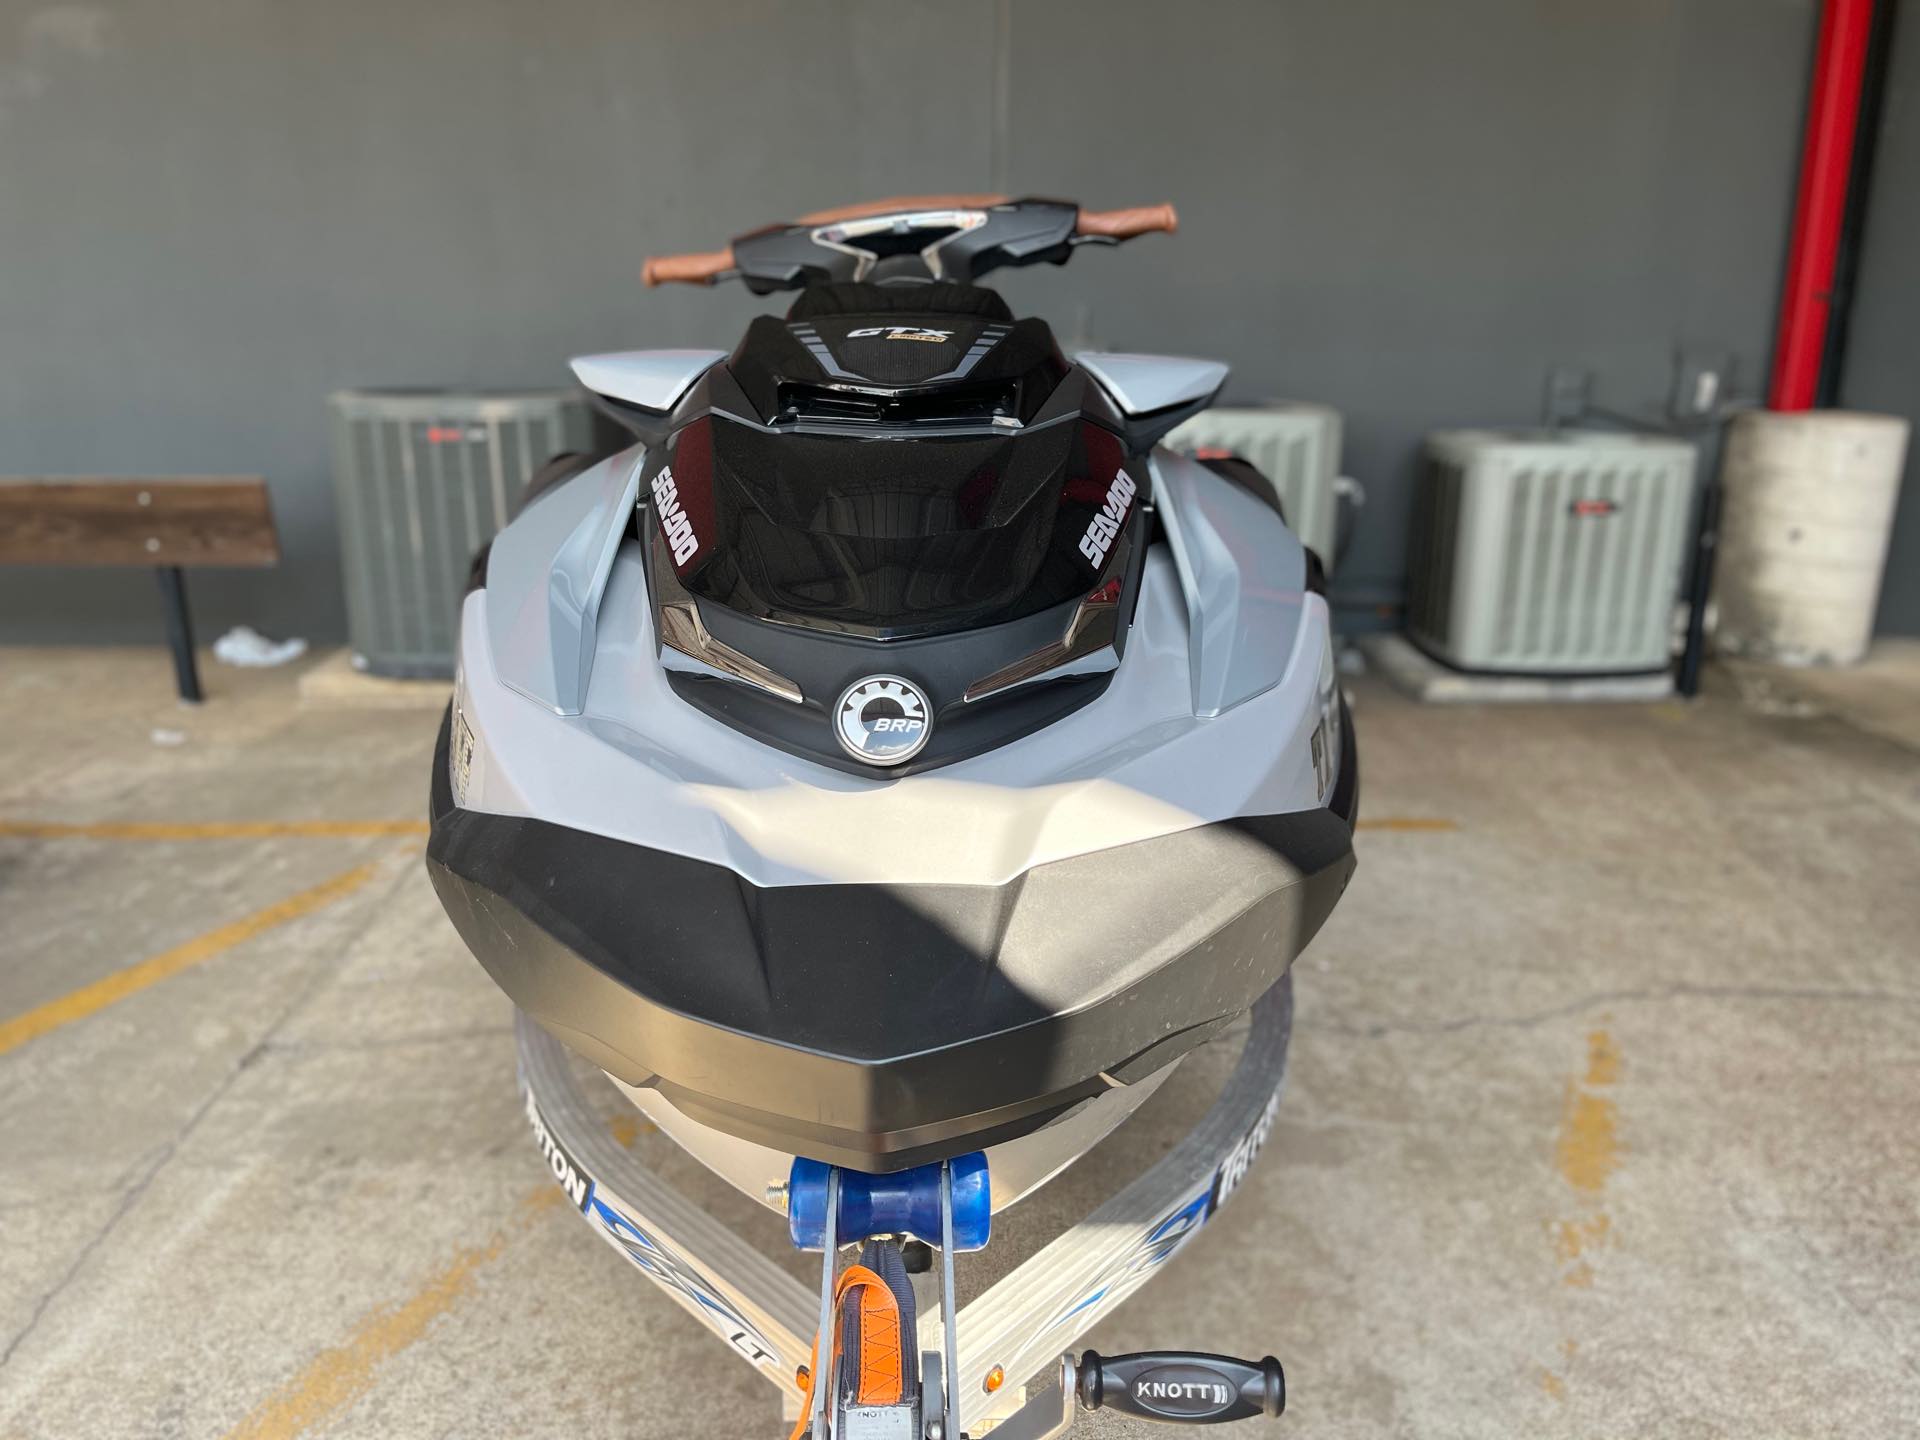 2019 Sea-Doo GTX LTD 300 LM WSOUND at Wild West Motoplex